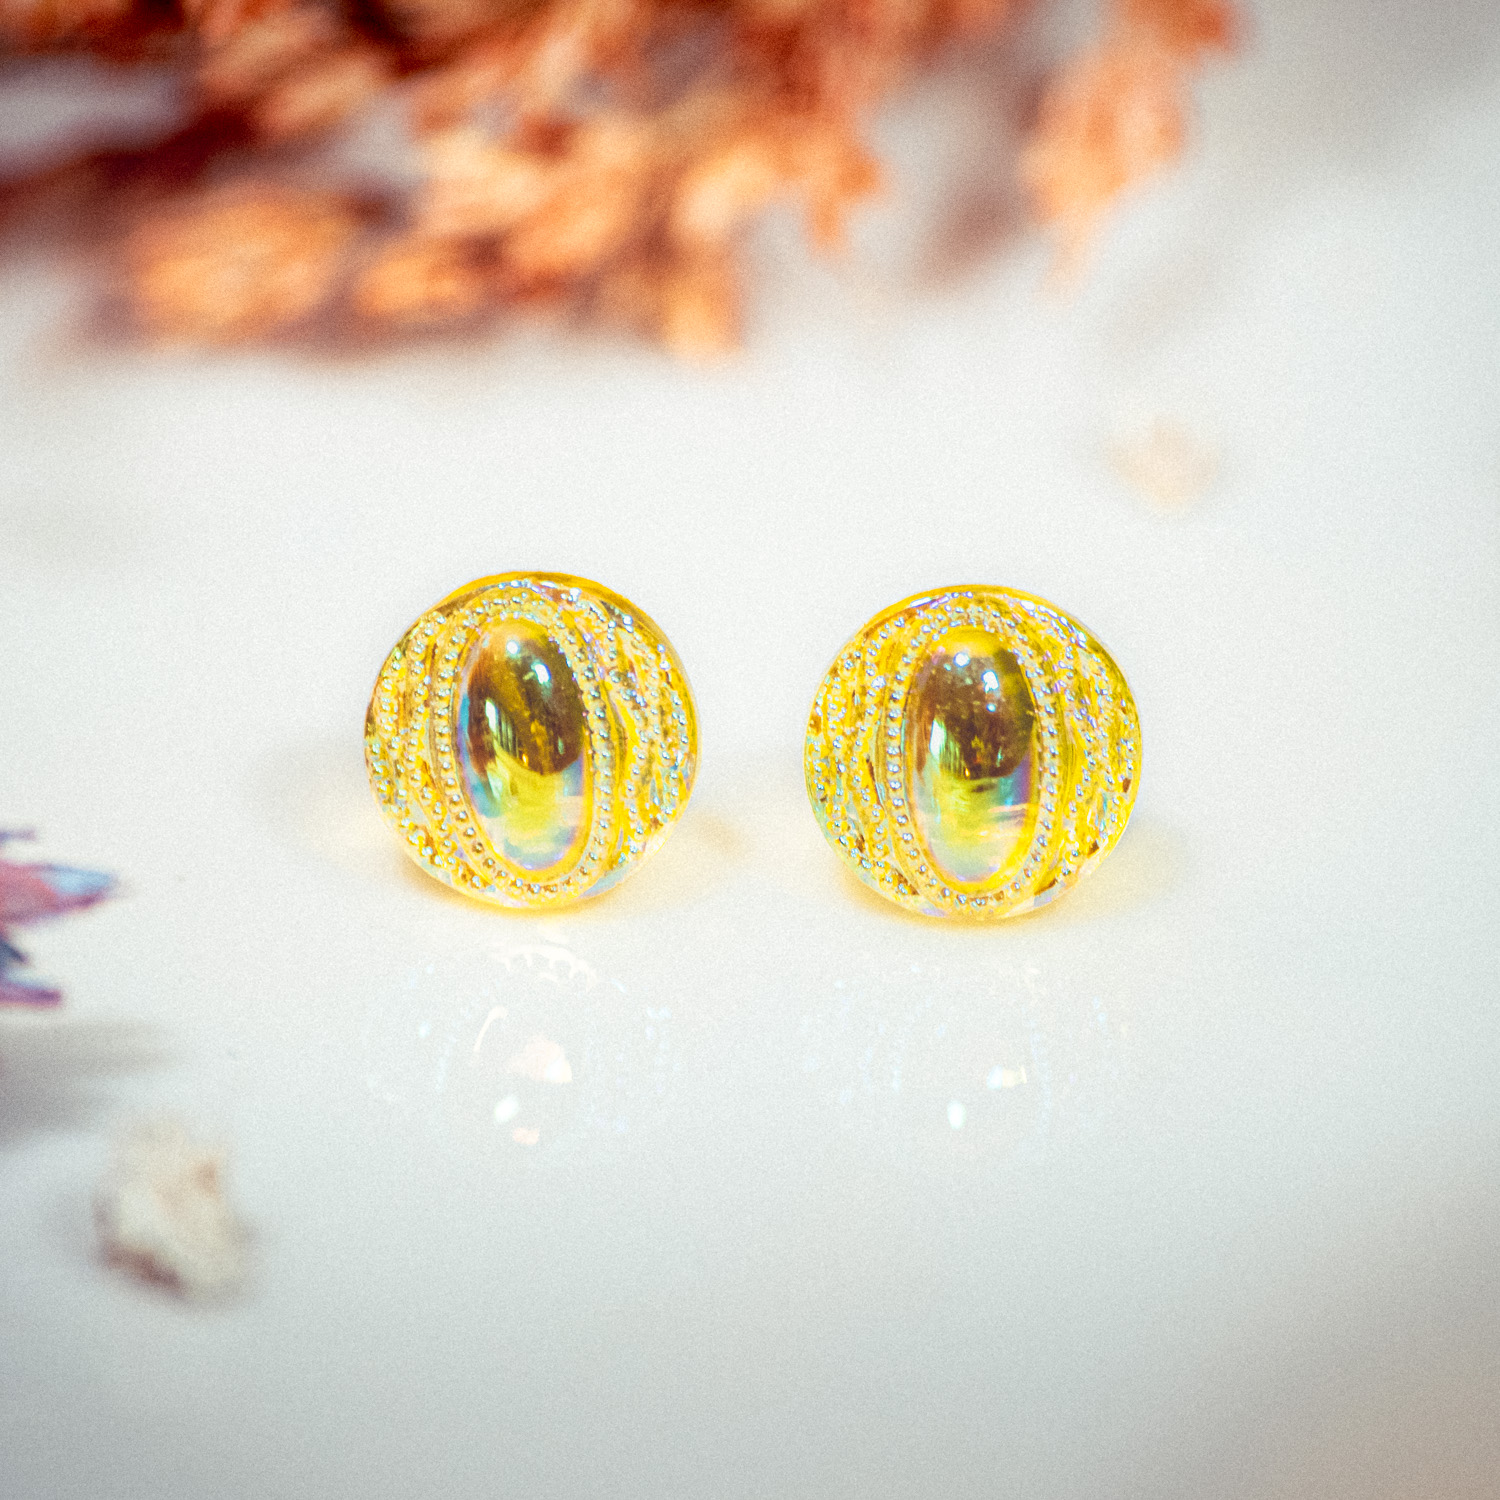 Assuna – Boucles d’oreilles puces Candice jaune citron – bouton ancien 1940 – clous d’oreilles acier inoxydable